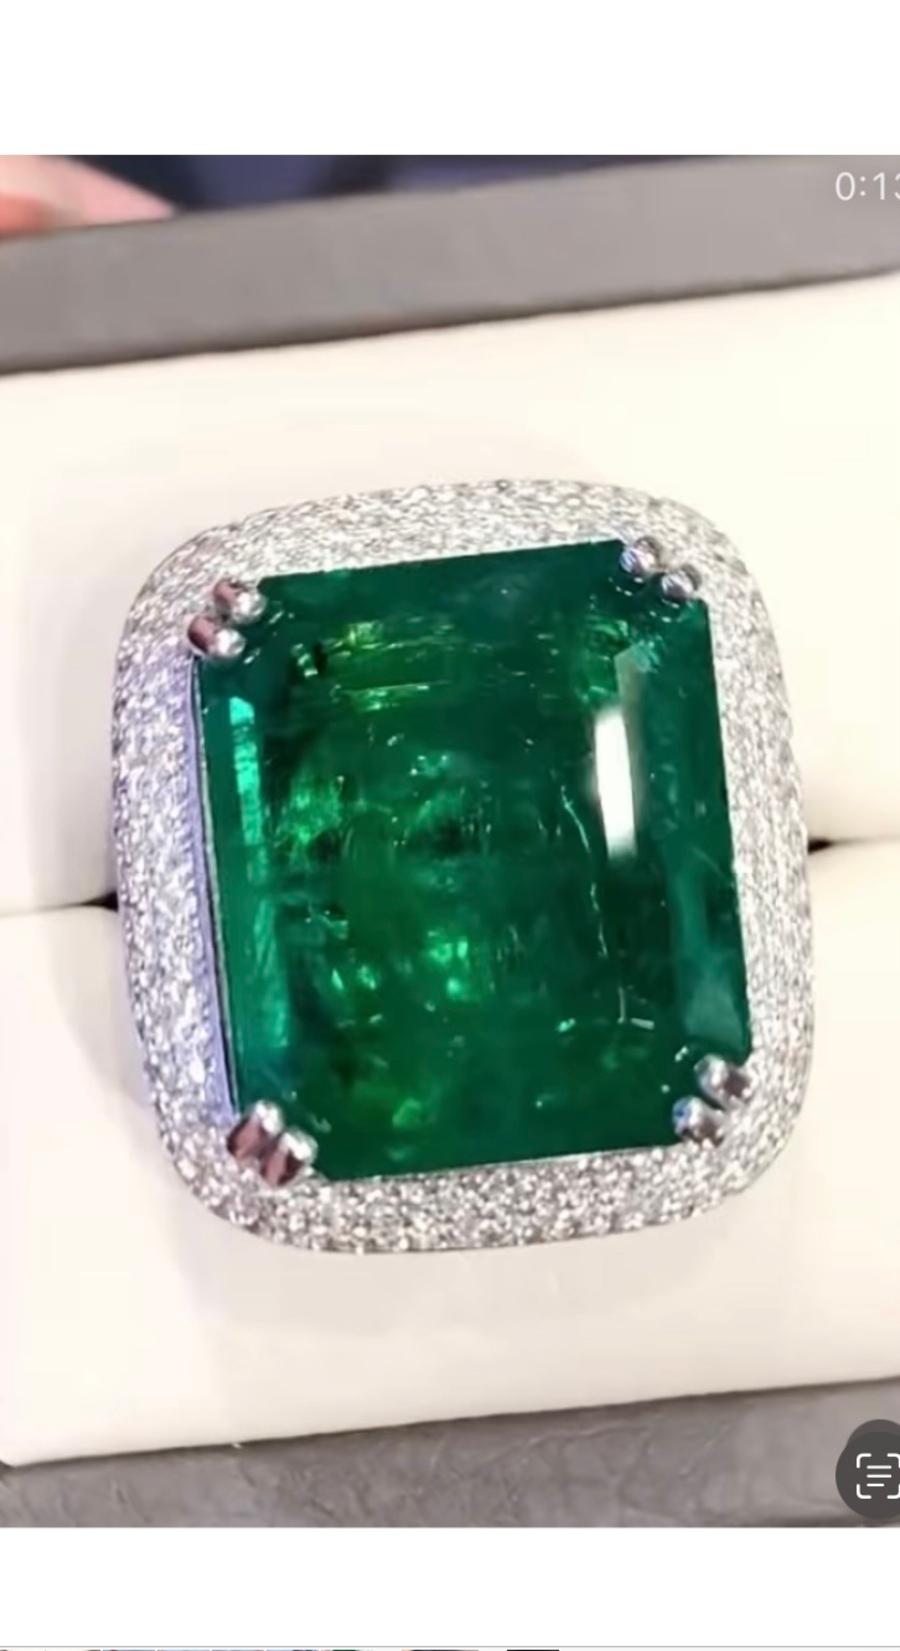 Ein exquisiter und seltener großer Sambia-Smaragd von 26 Karat, feiner Grad und Qualität, sehr hartes Stück, spektakuläres Grün, auf einem zeitgenössischen Ringdesign in 18k Gold mit runden Diamanten im Brillantschliff 1,10 Karat F/ VS. 
Es handelt